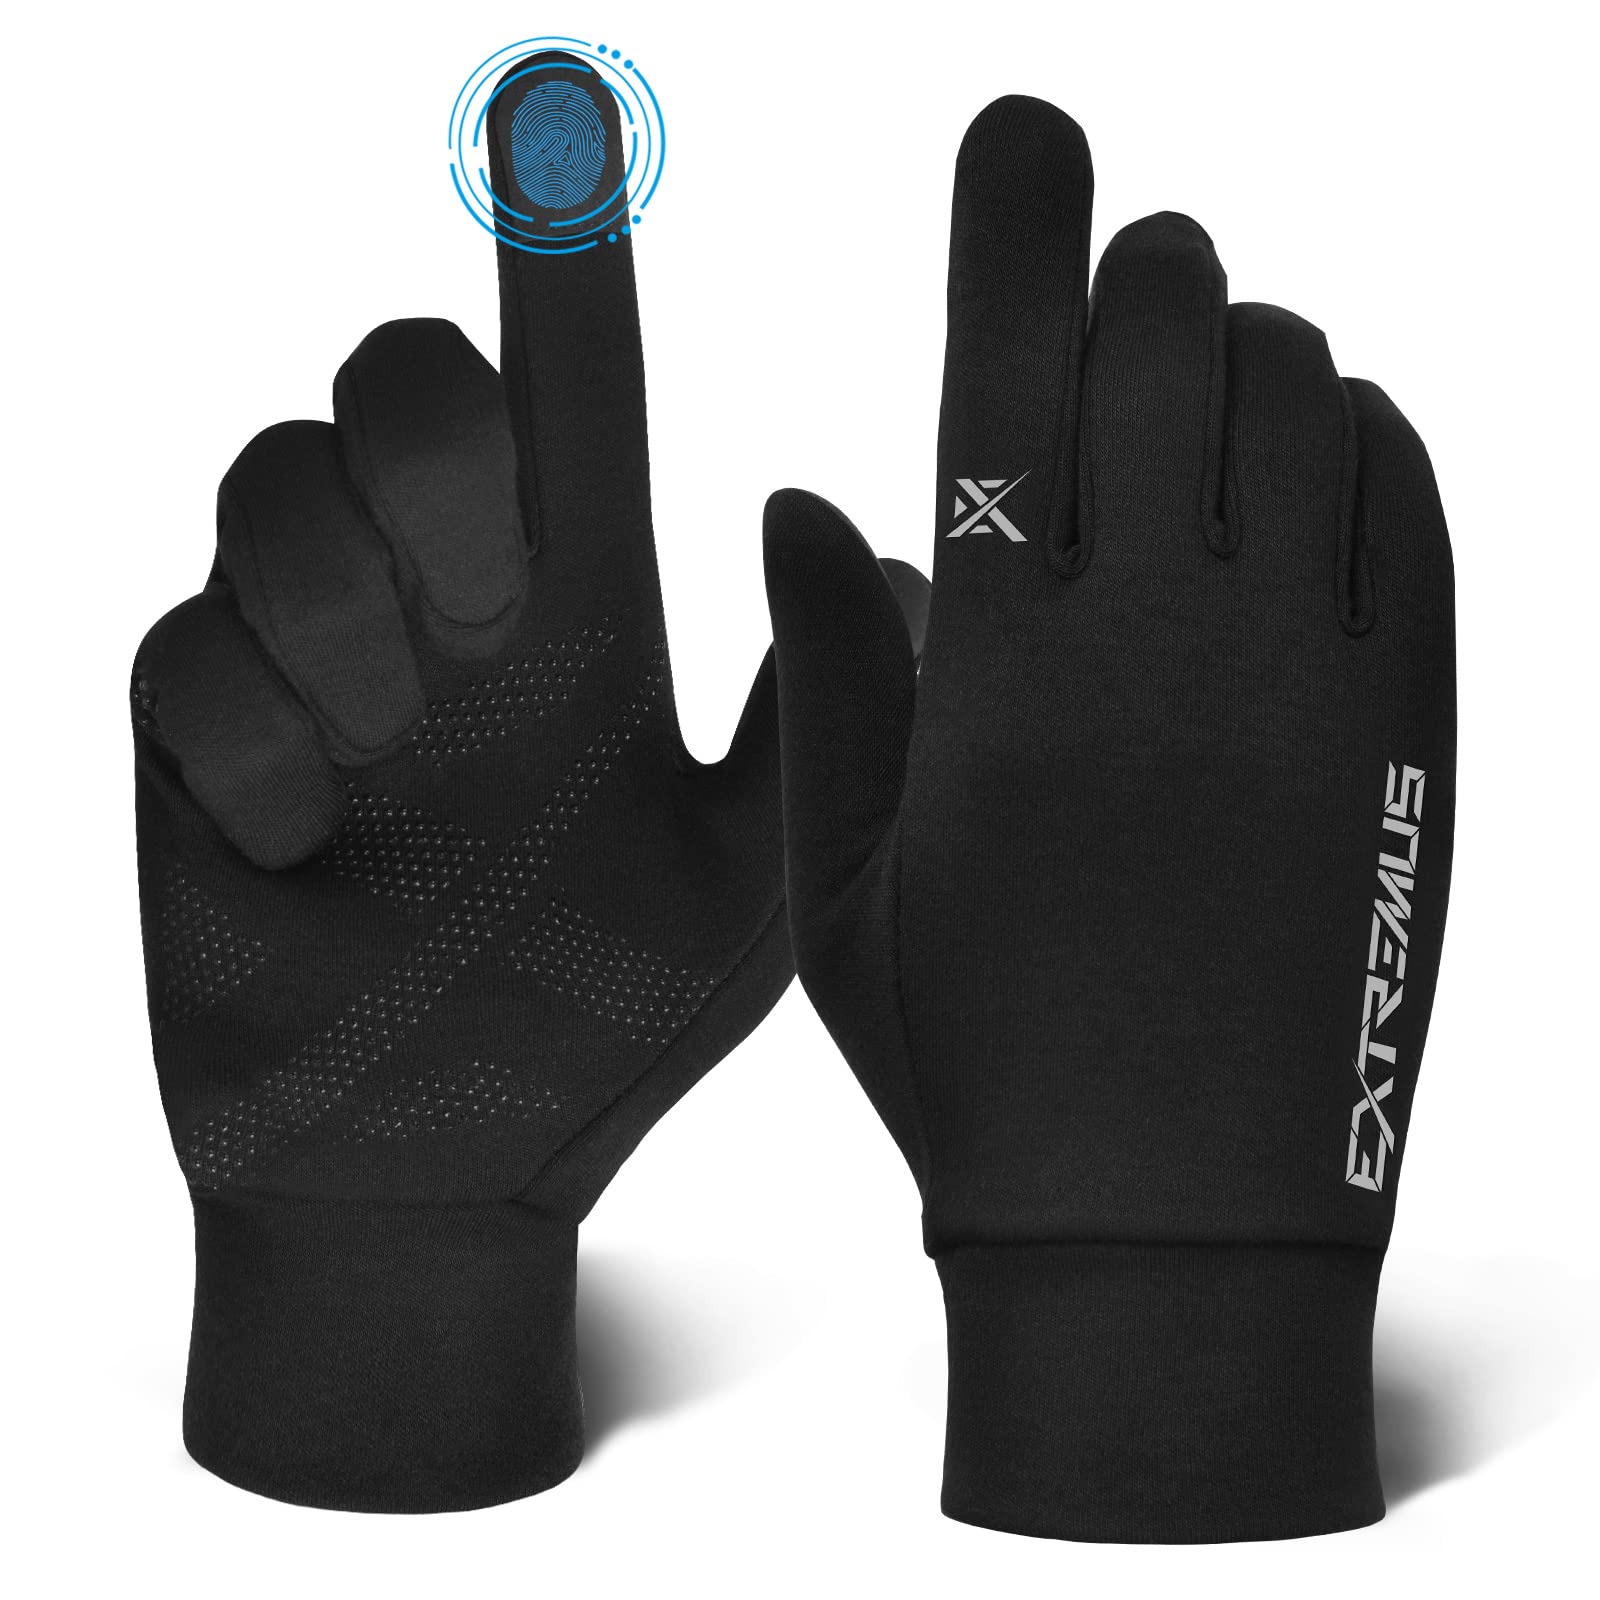 Extremus Winter Gloves for Men Women, Touchscreen Running Gloves